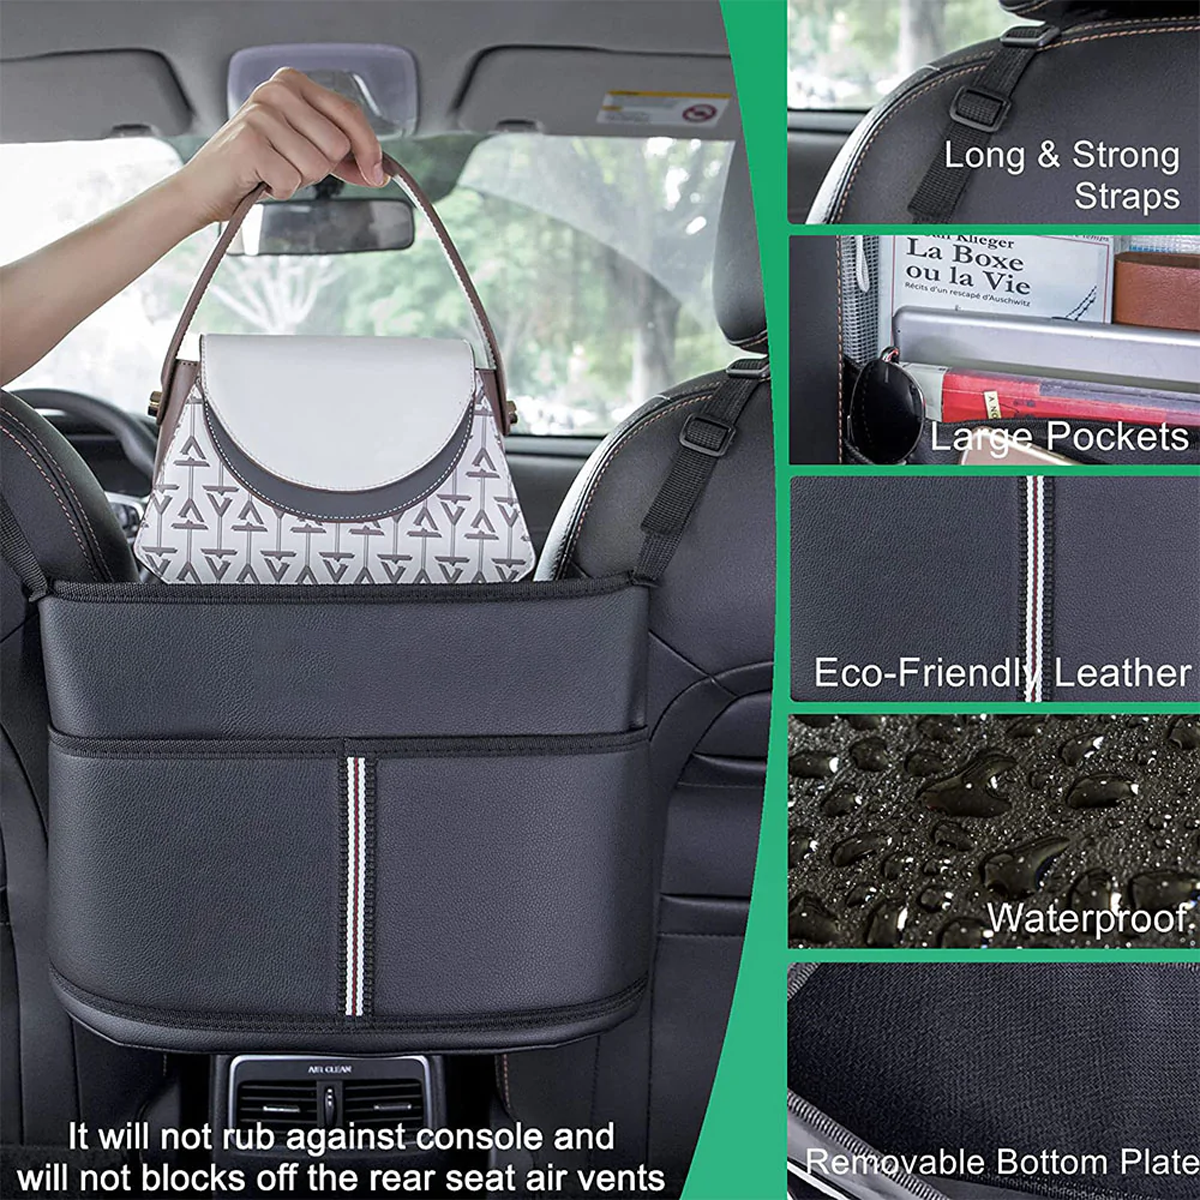 Car Purse Holder for Car Handbag Holder Between Seats Premium PU Leather, Custom Fit For Car, Hanging Car Purse Storage Pocket Back Seat Pet Barrier WADR223